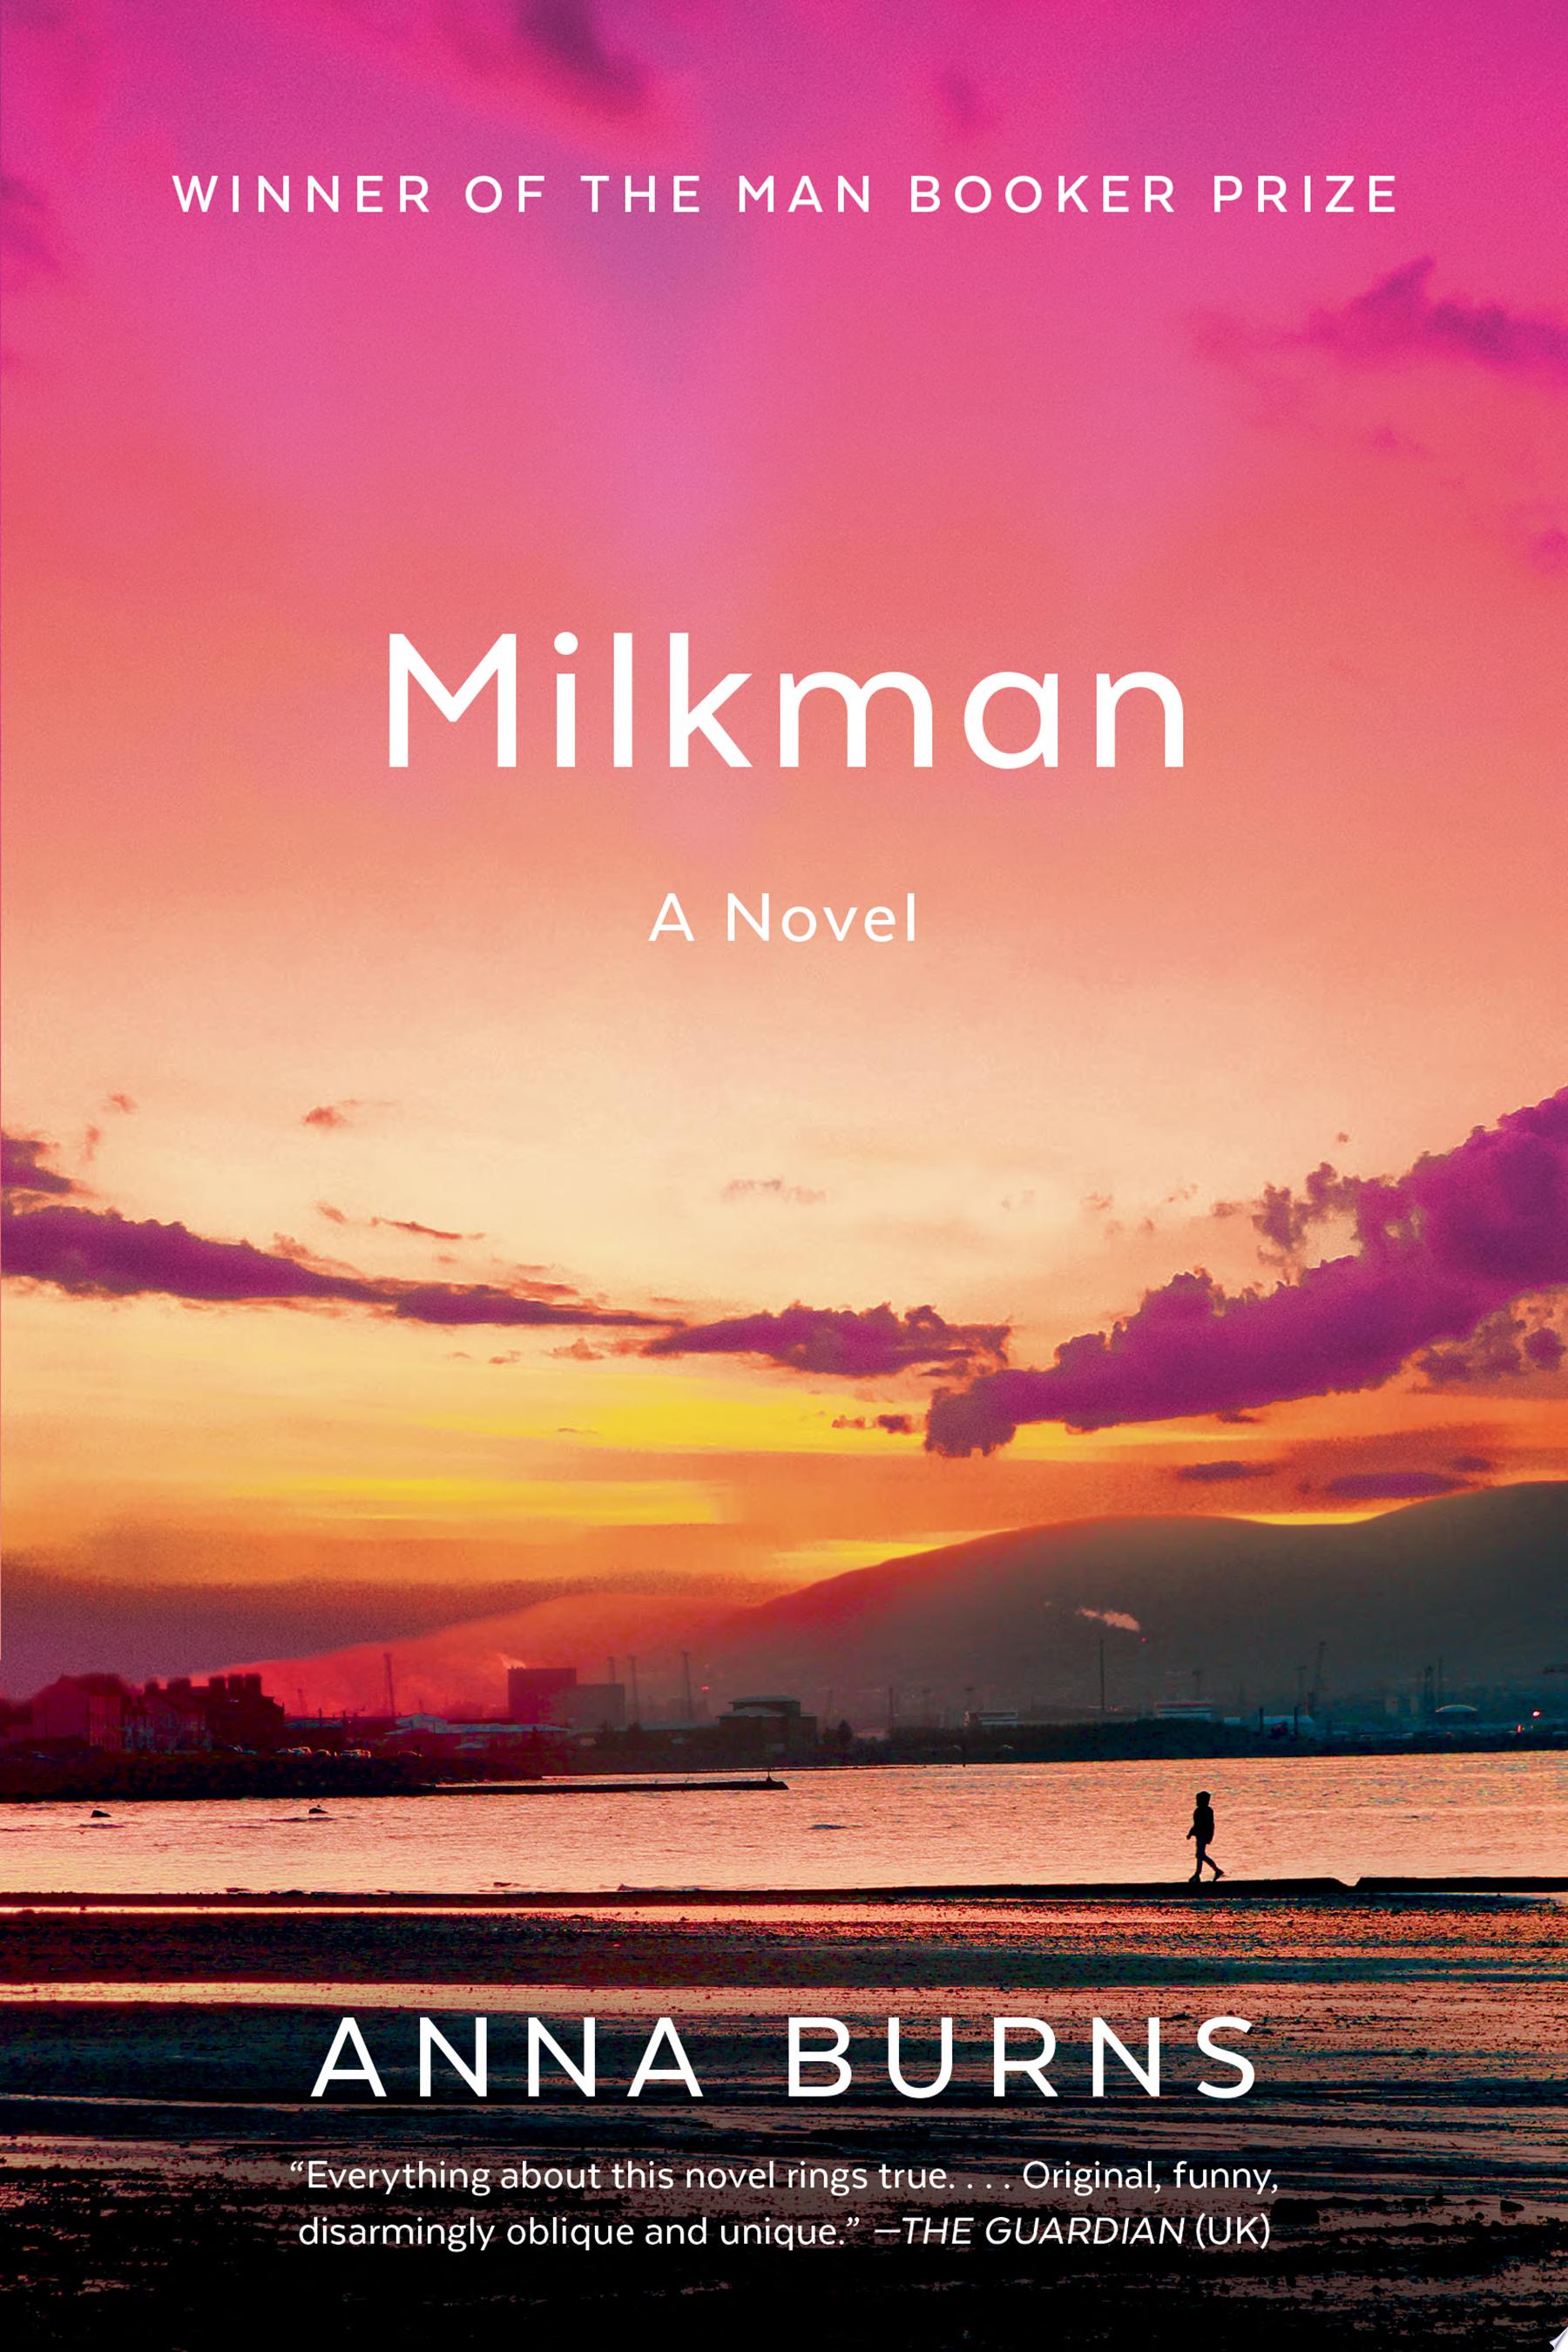 Image for "Milkman: a novel"